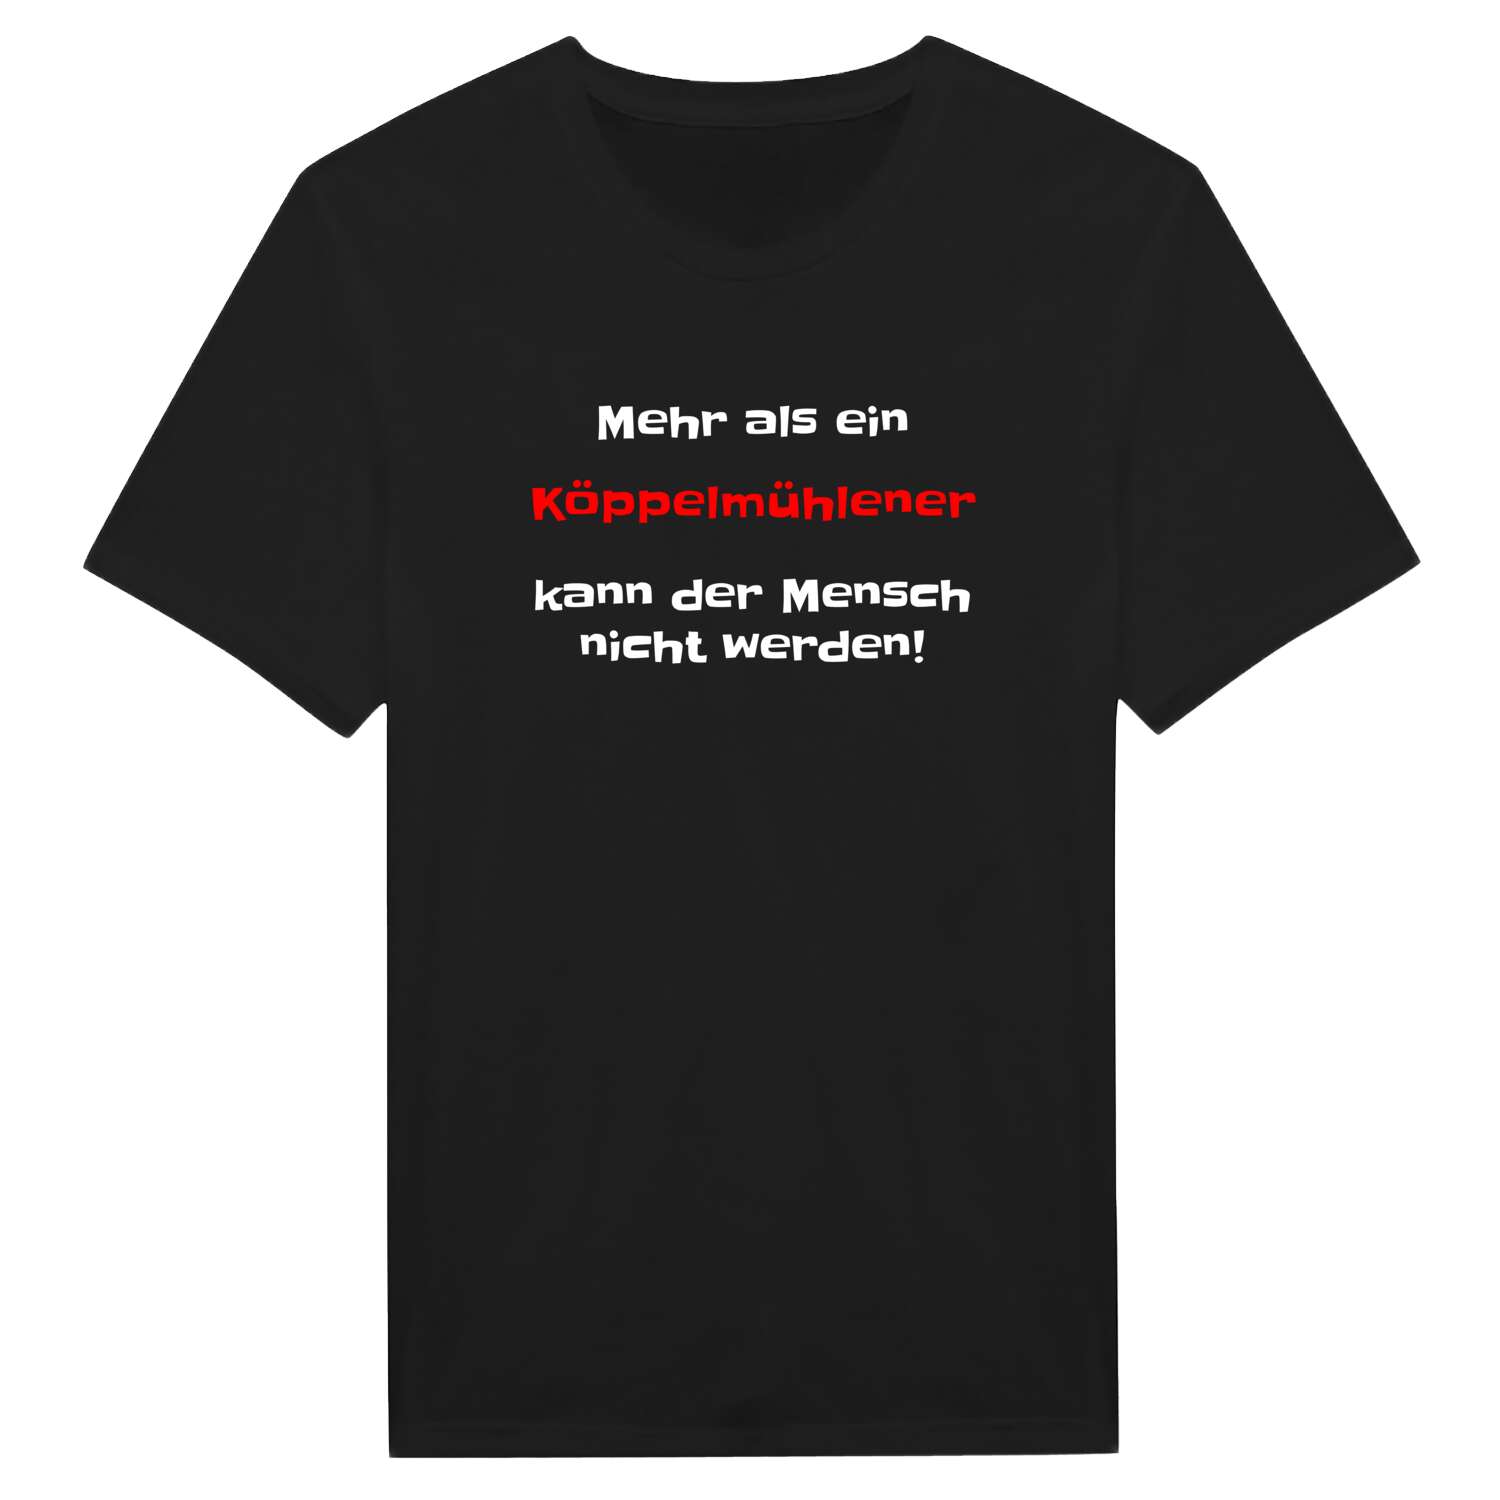 Köppelmühle T-Shirt »Mehr als ein«